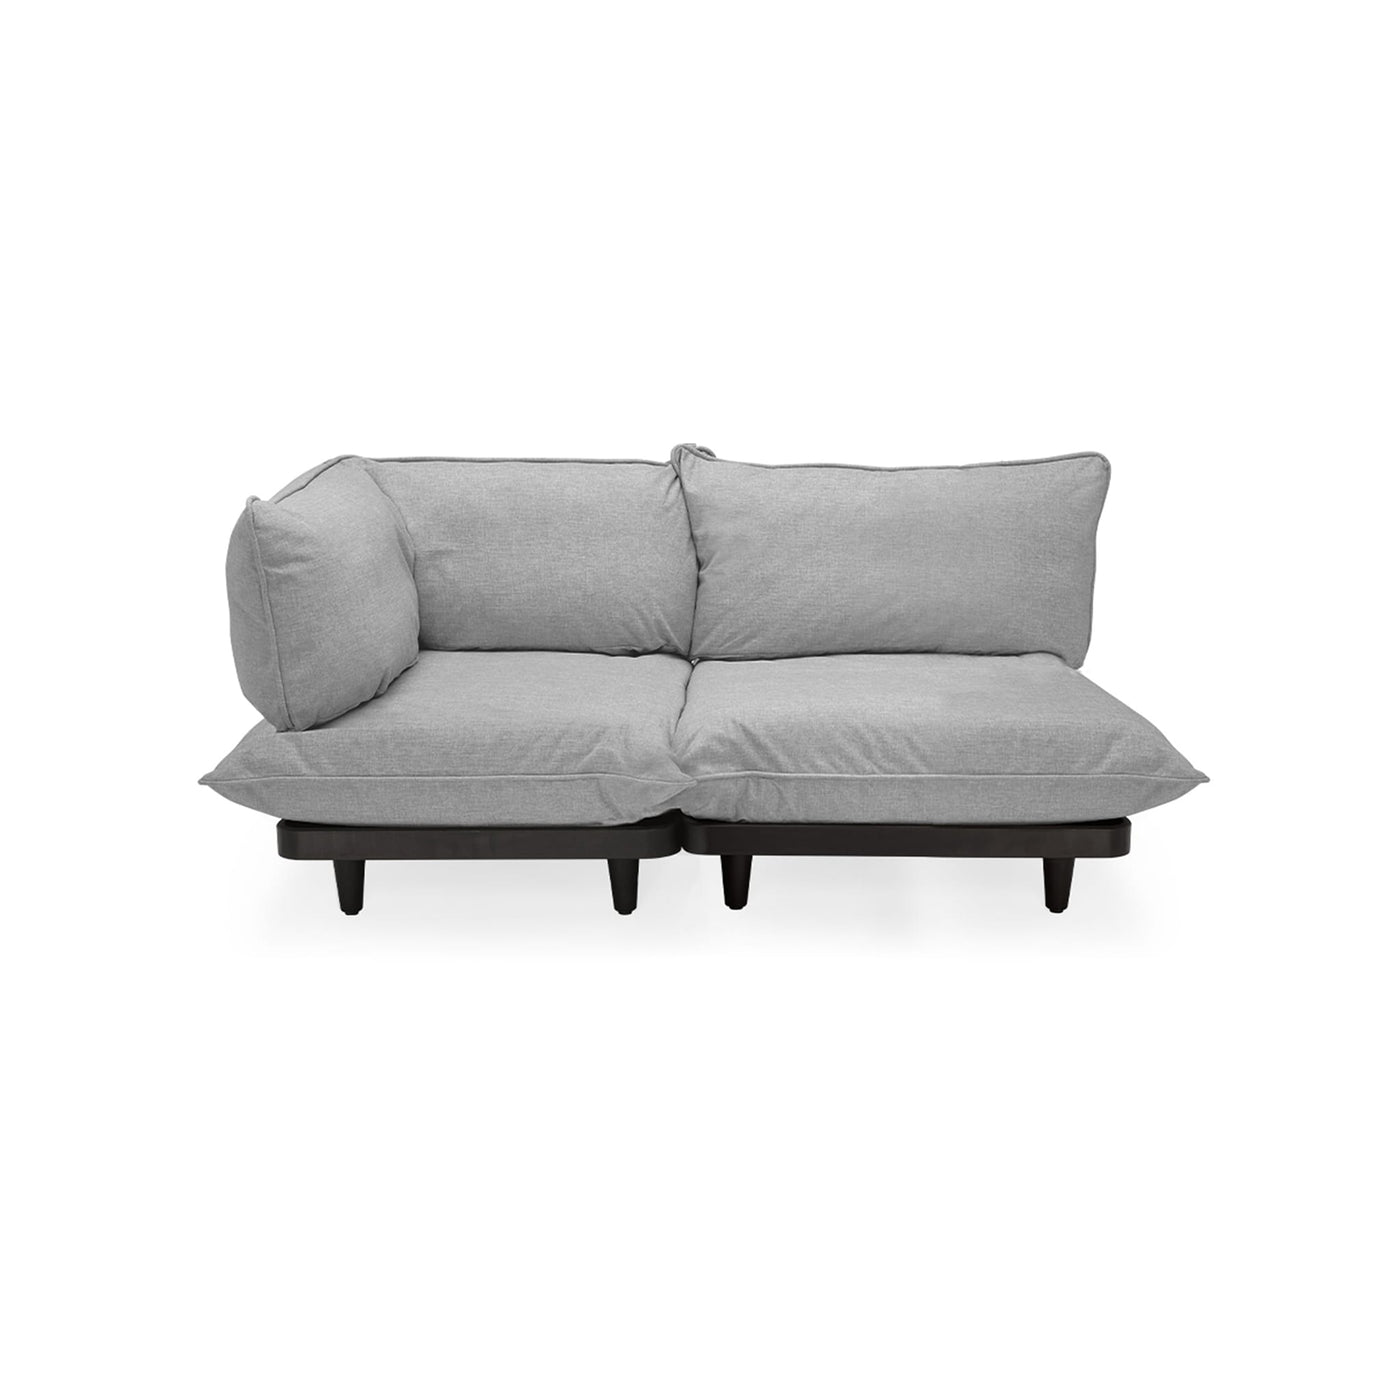 Le sofa Paletti de Fatboy : une oasis de confort en plein air. Robuste et élégant, il résiste aux éléments tout en rehaussant l'esthétique de votre espace extérieur. Profitez d'une détente inégalée. Gris pierre.